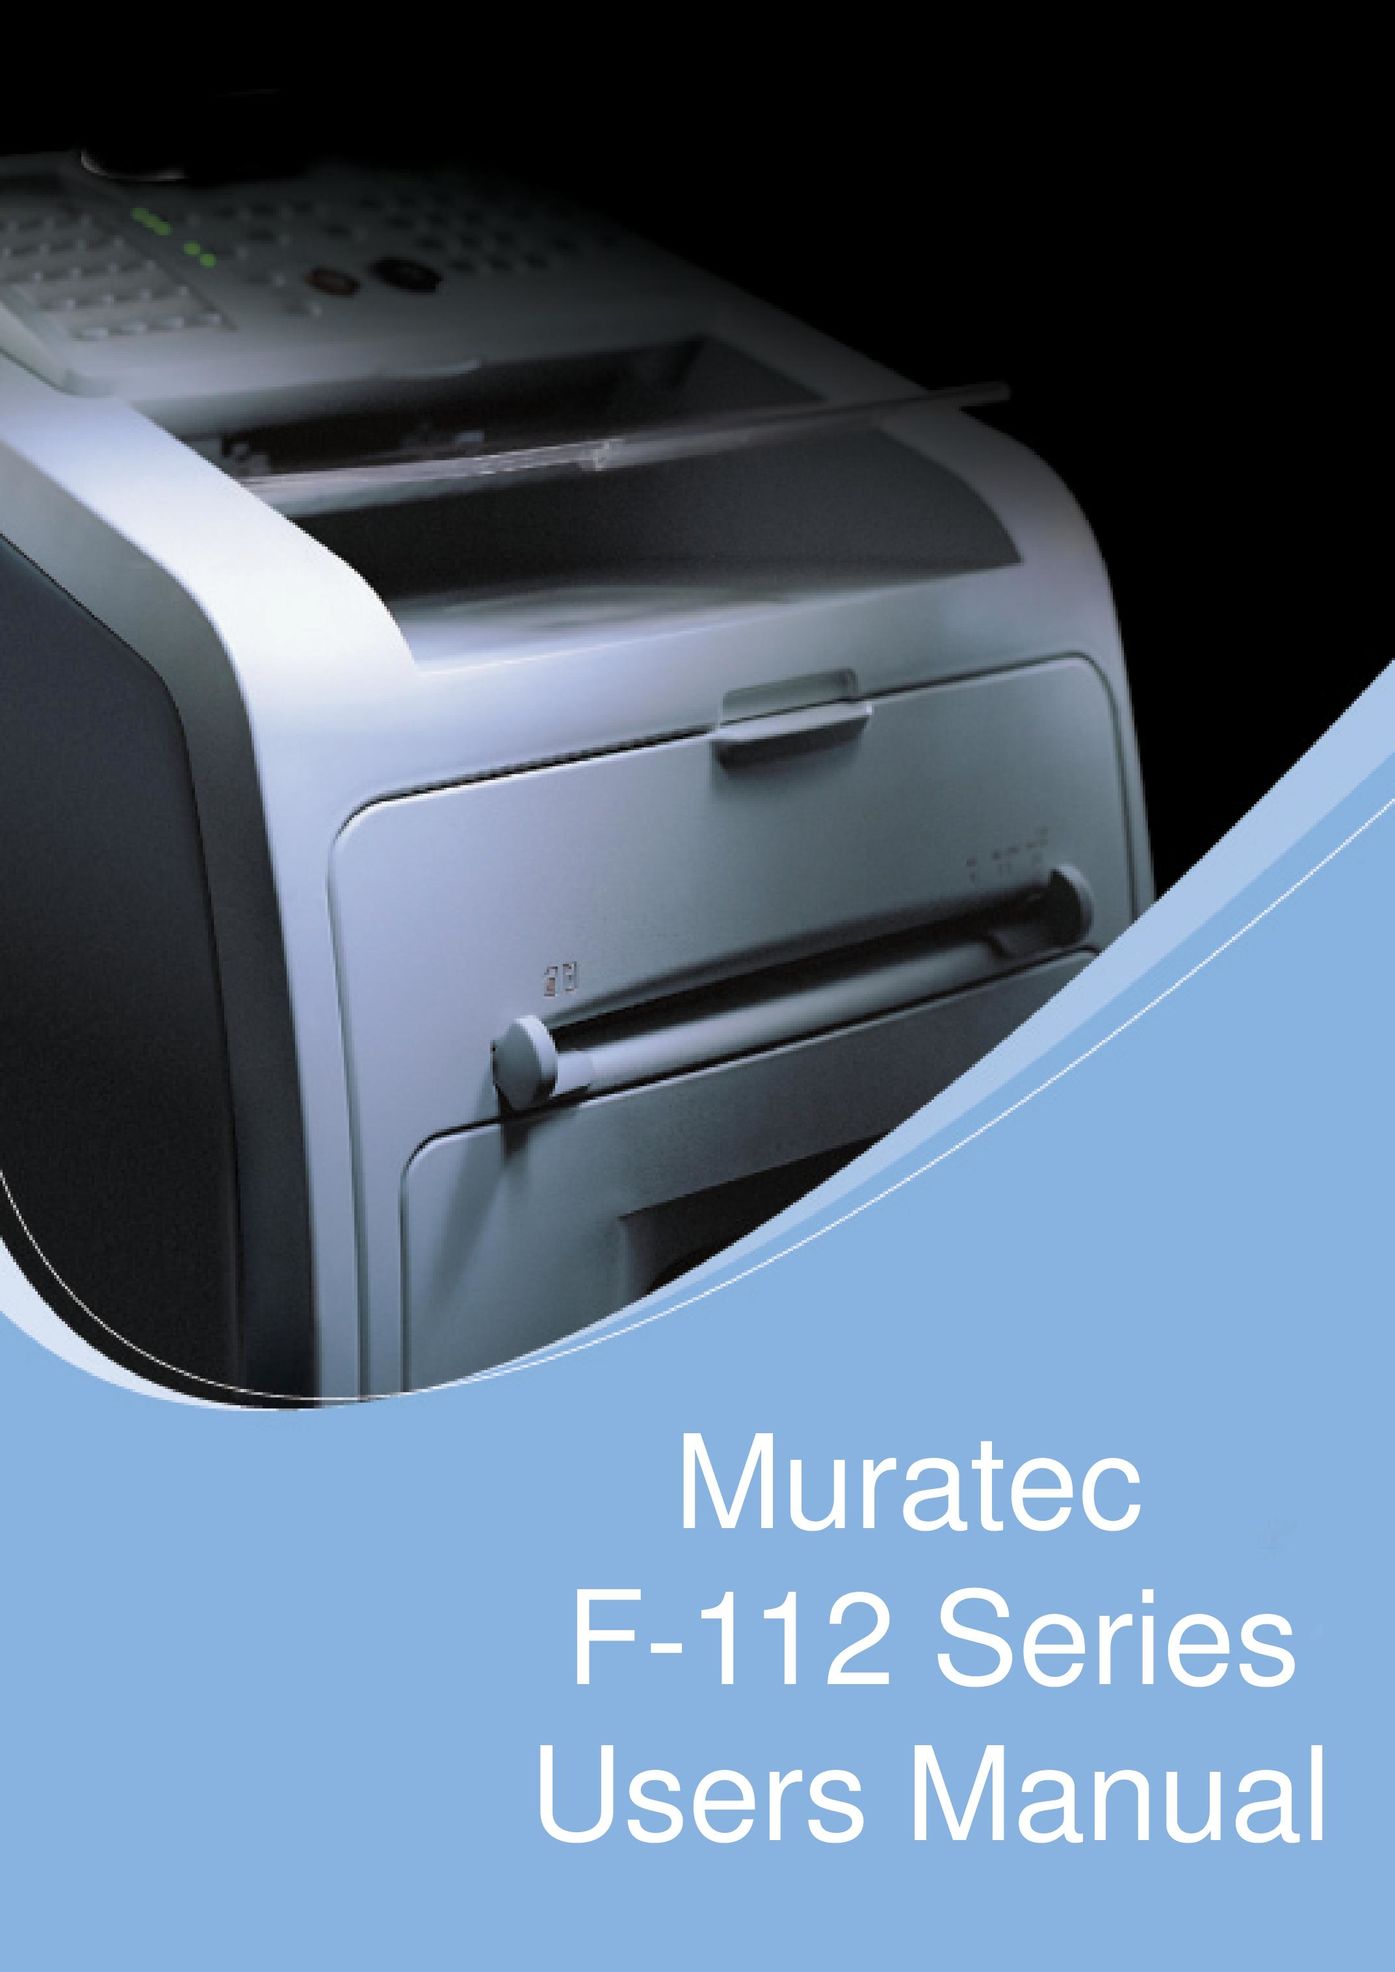 Muratec F-112 All in One Printer User Manual